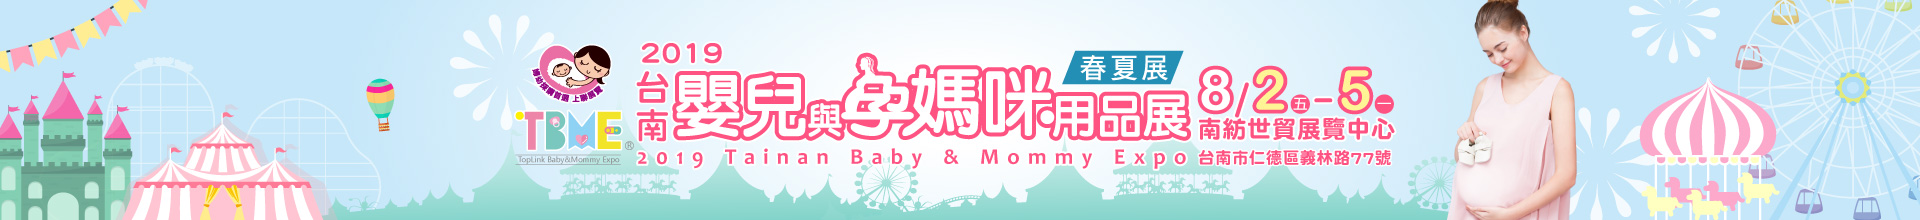 2019台南嬰兒與孕媽咪用品展暨兒童玩具博覽會-春夏季